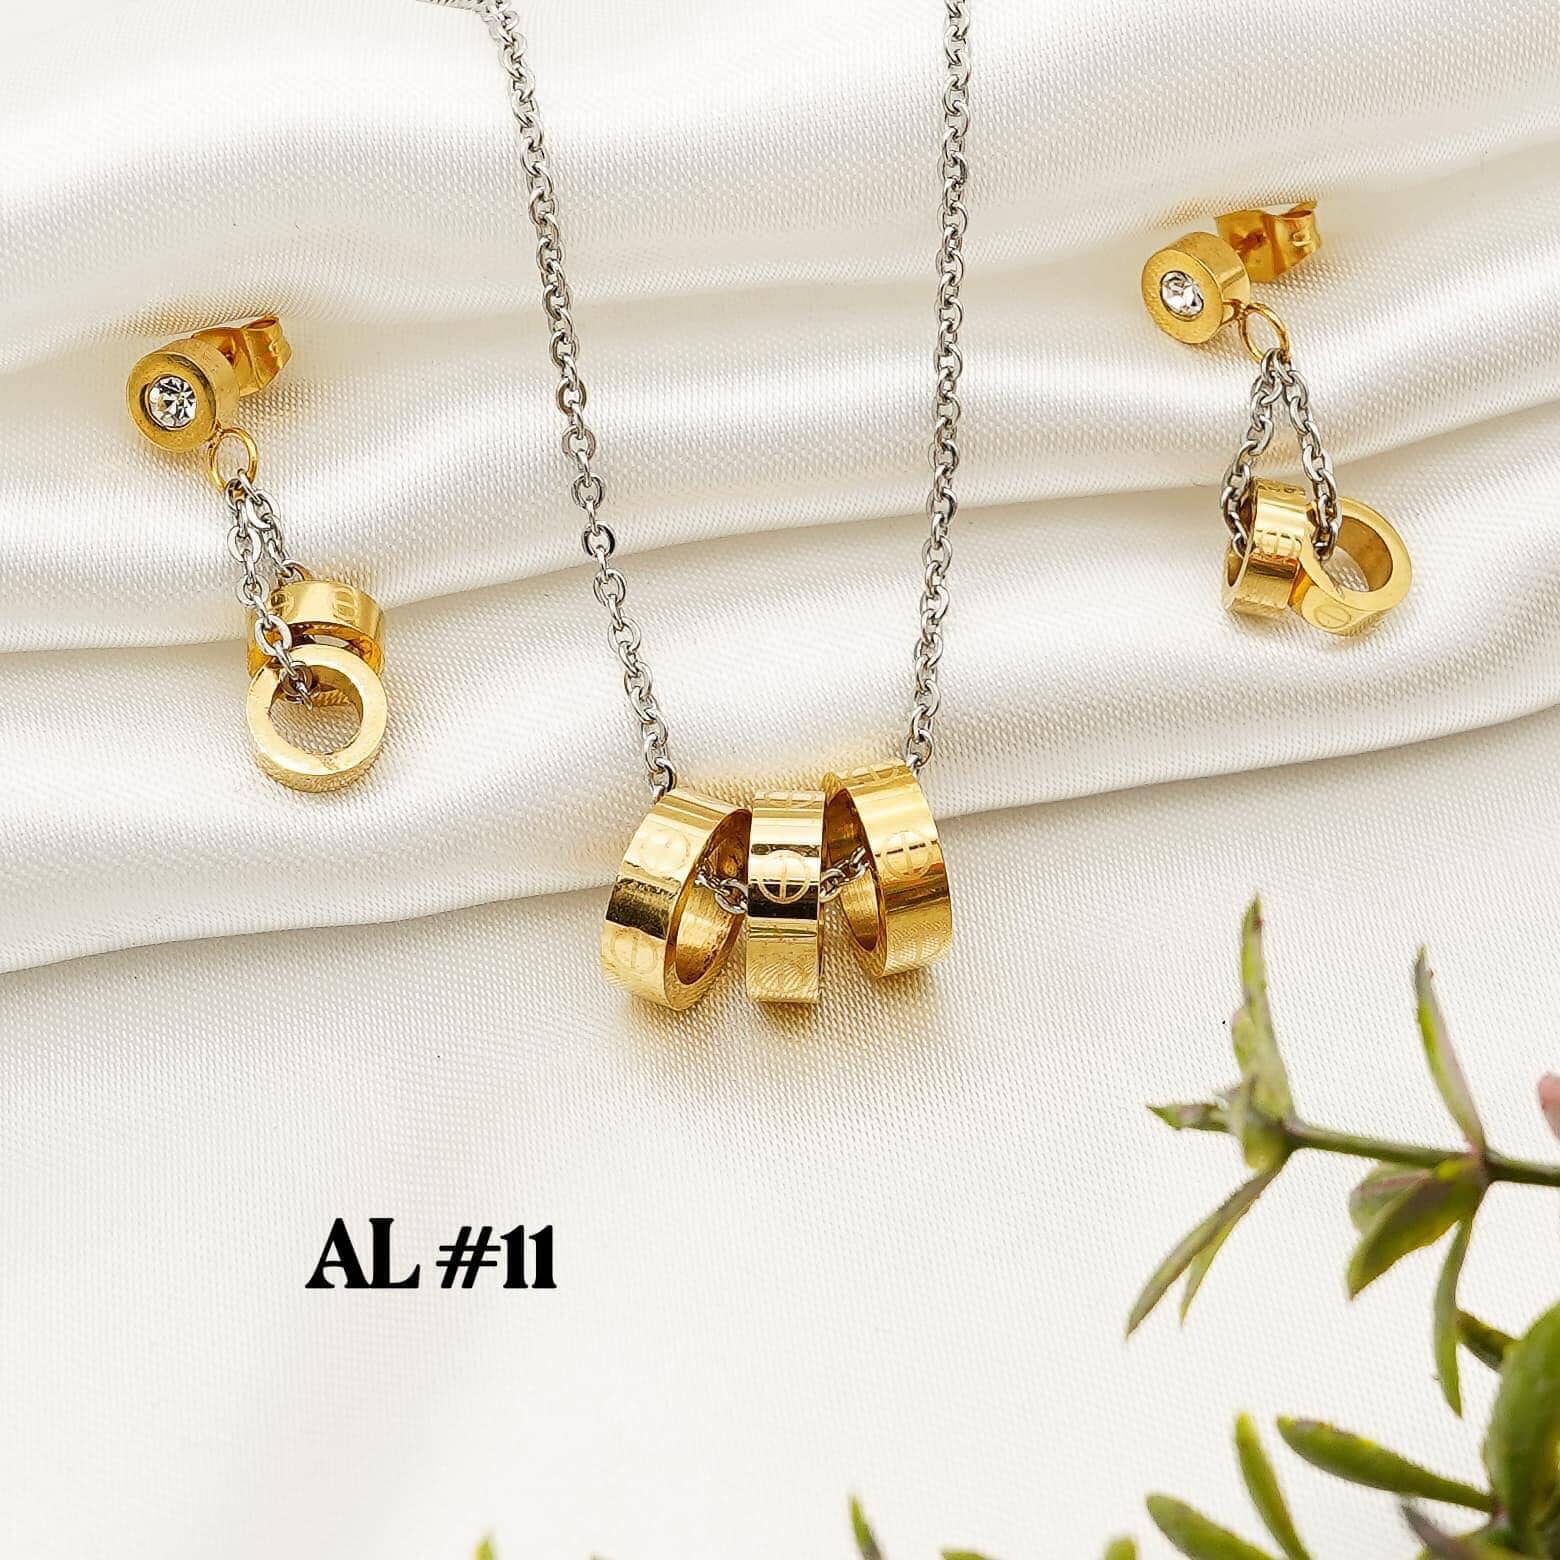 2-in-1 Jewelry Set With Box StyleMoto #AL11 